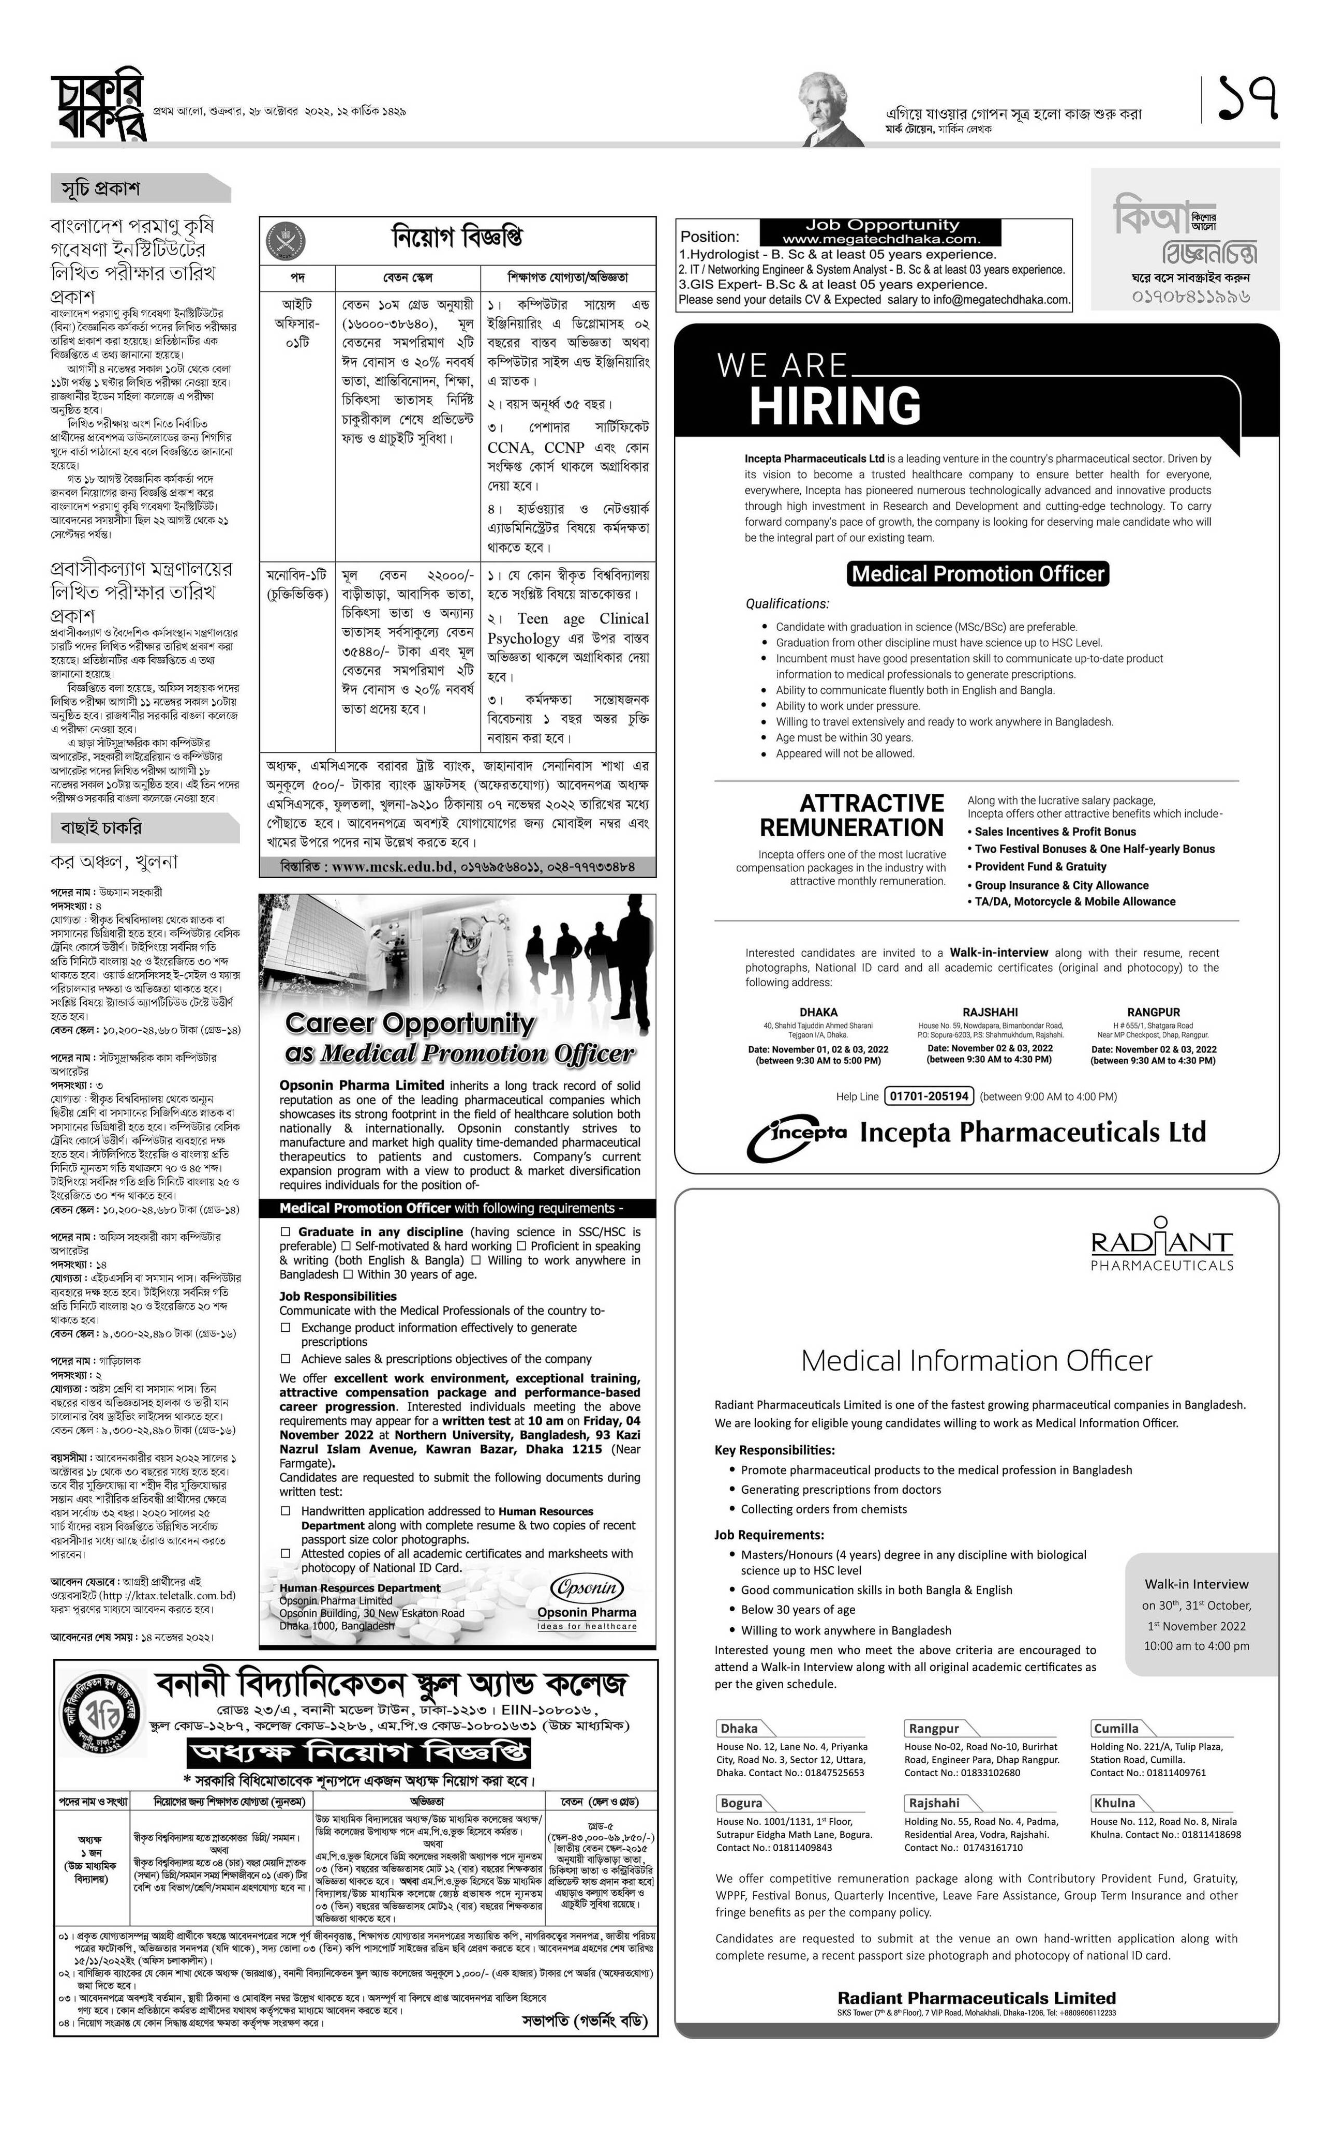 প্রথম আলো চাকরির খবর সাপ্তাহিক চাকরি বাকরি পত্রিকা ১০ নভেম্বর ২০২২ - 10 November 2022 Prothom Alo Chakrir Khobor - প্রথম আলো চাকরির খবর পত্রিকা ১০/১১/২০২২ - প্রথম আলো পত্রিকা আজকের খবর - Prothom Alo jobs 2022-2023 - প্রথম আলো চাকরির খবর 2022-2023 - prothom alo chakri bakri 2022-2023 - চাকরি বাকরি ২০২২-২০২৩ - সাপ্তাহিক চাকরি বাকরি